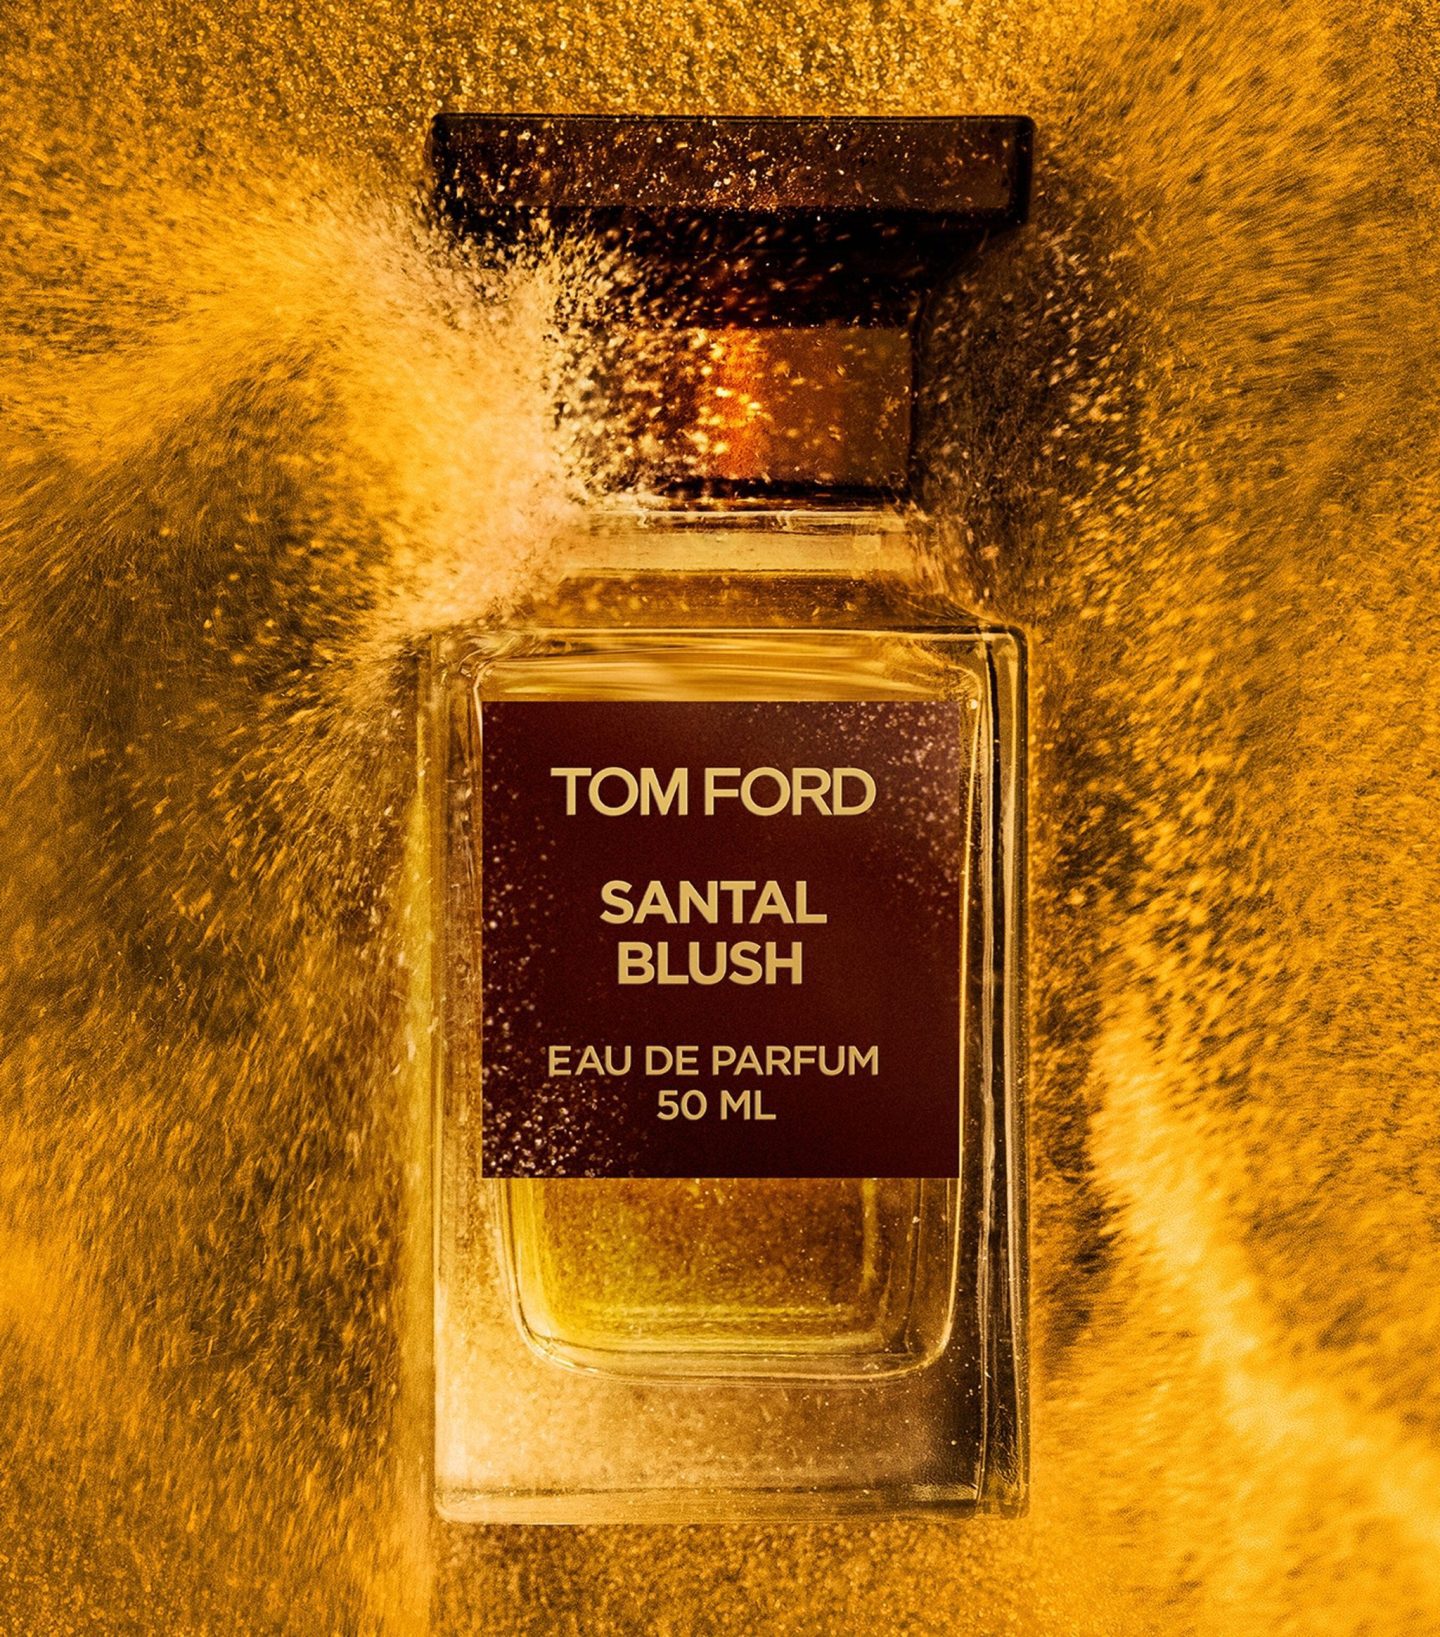 Tom Ford Santal Blush น้ำหอมกลิ่นไม้จันทน์ที่ดีที่สุด